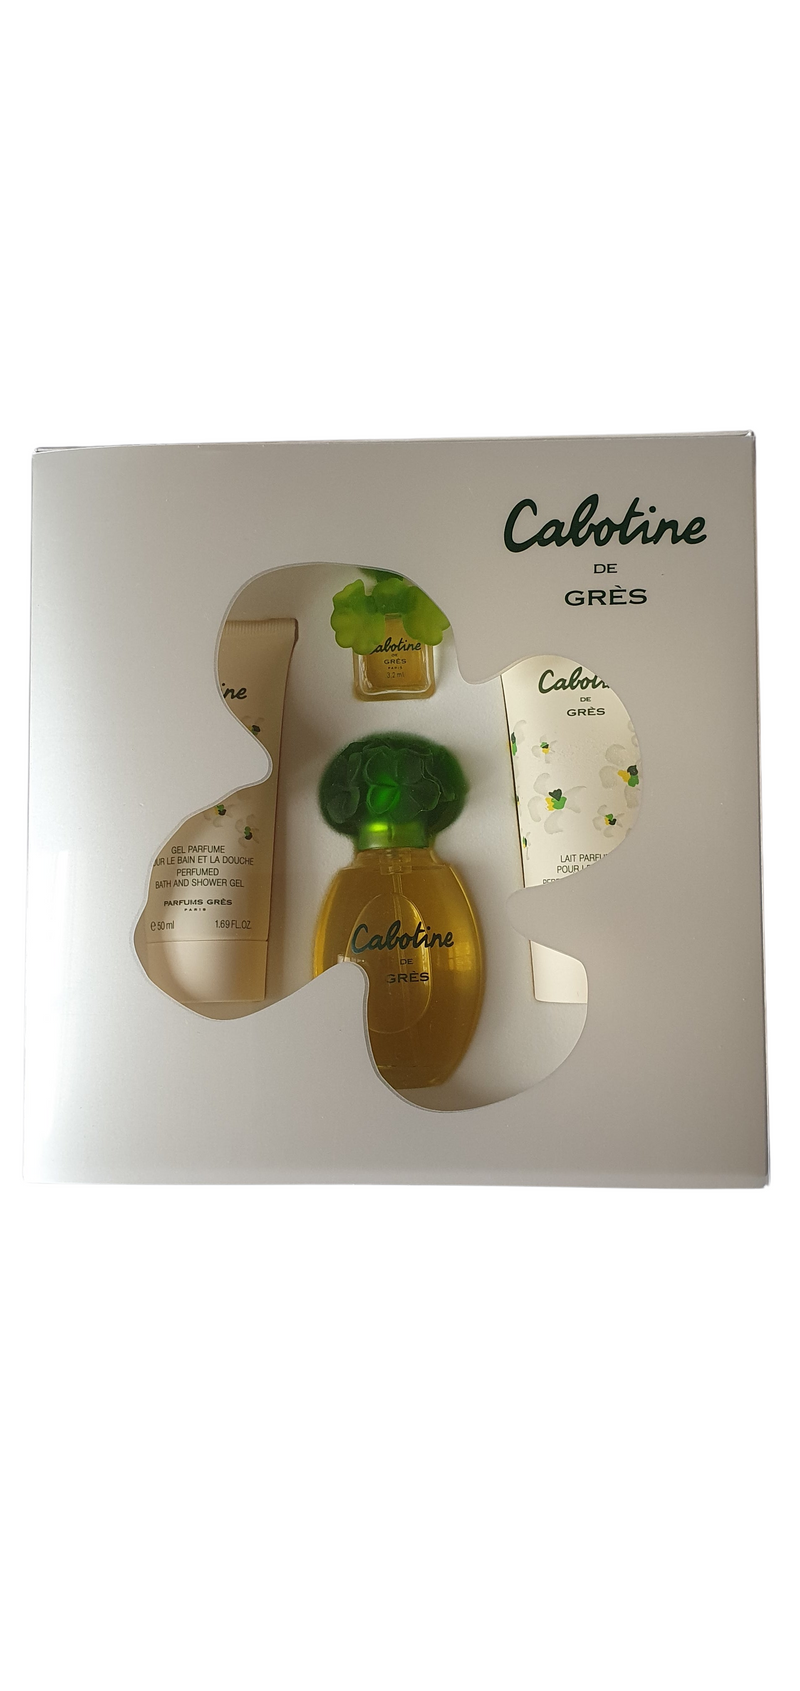 Cabotine - Grès - Eau de toilette - 50/50ml